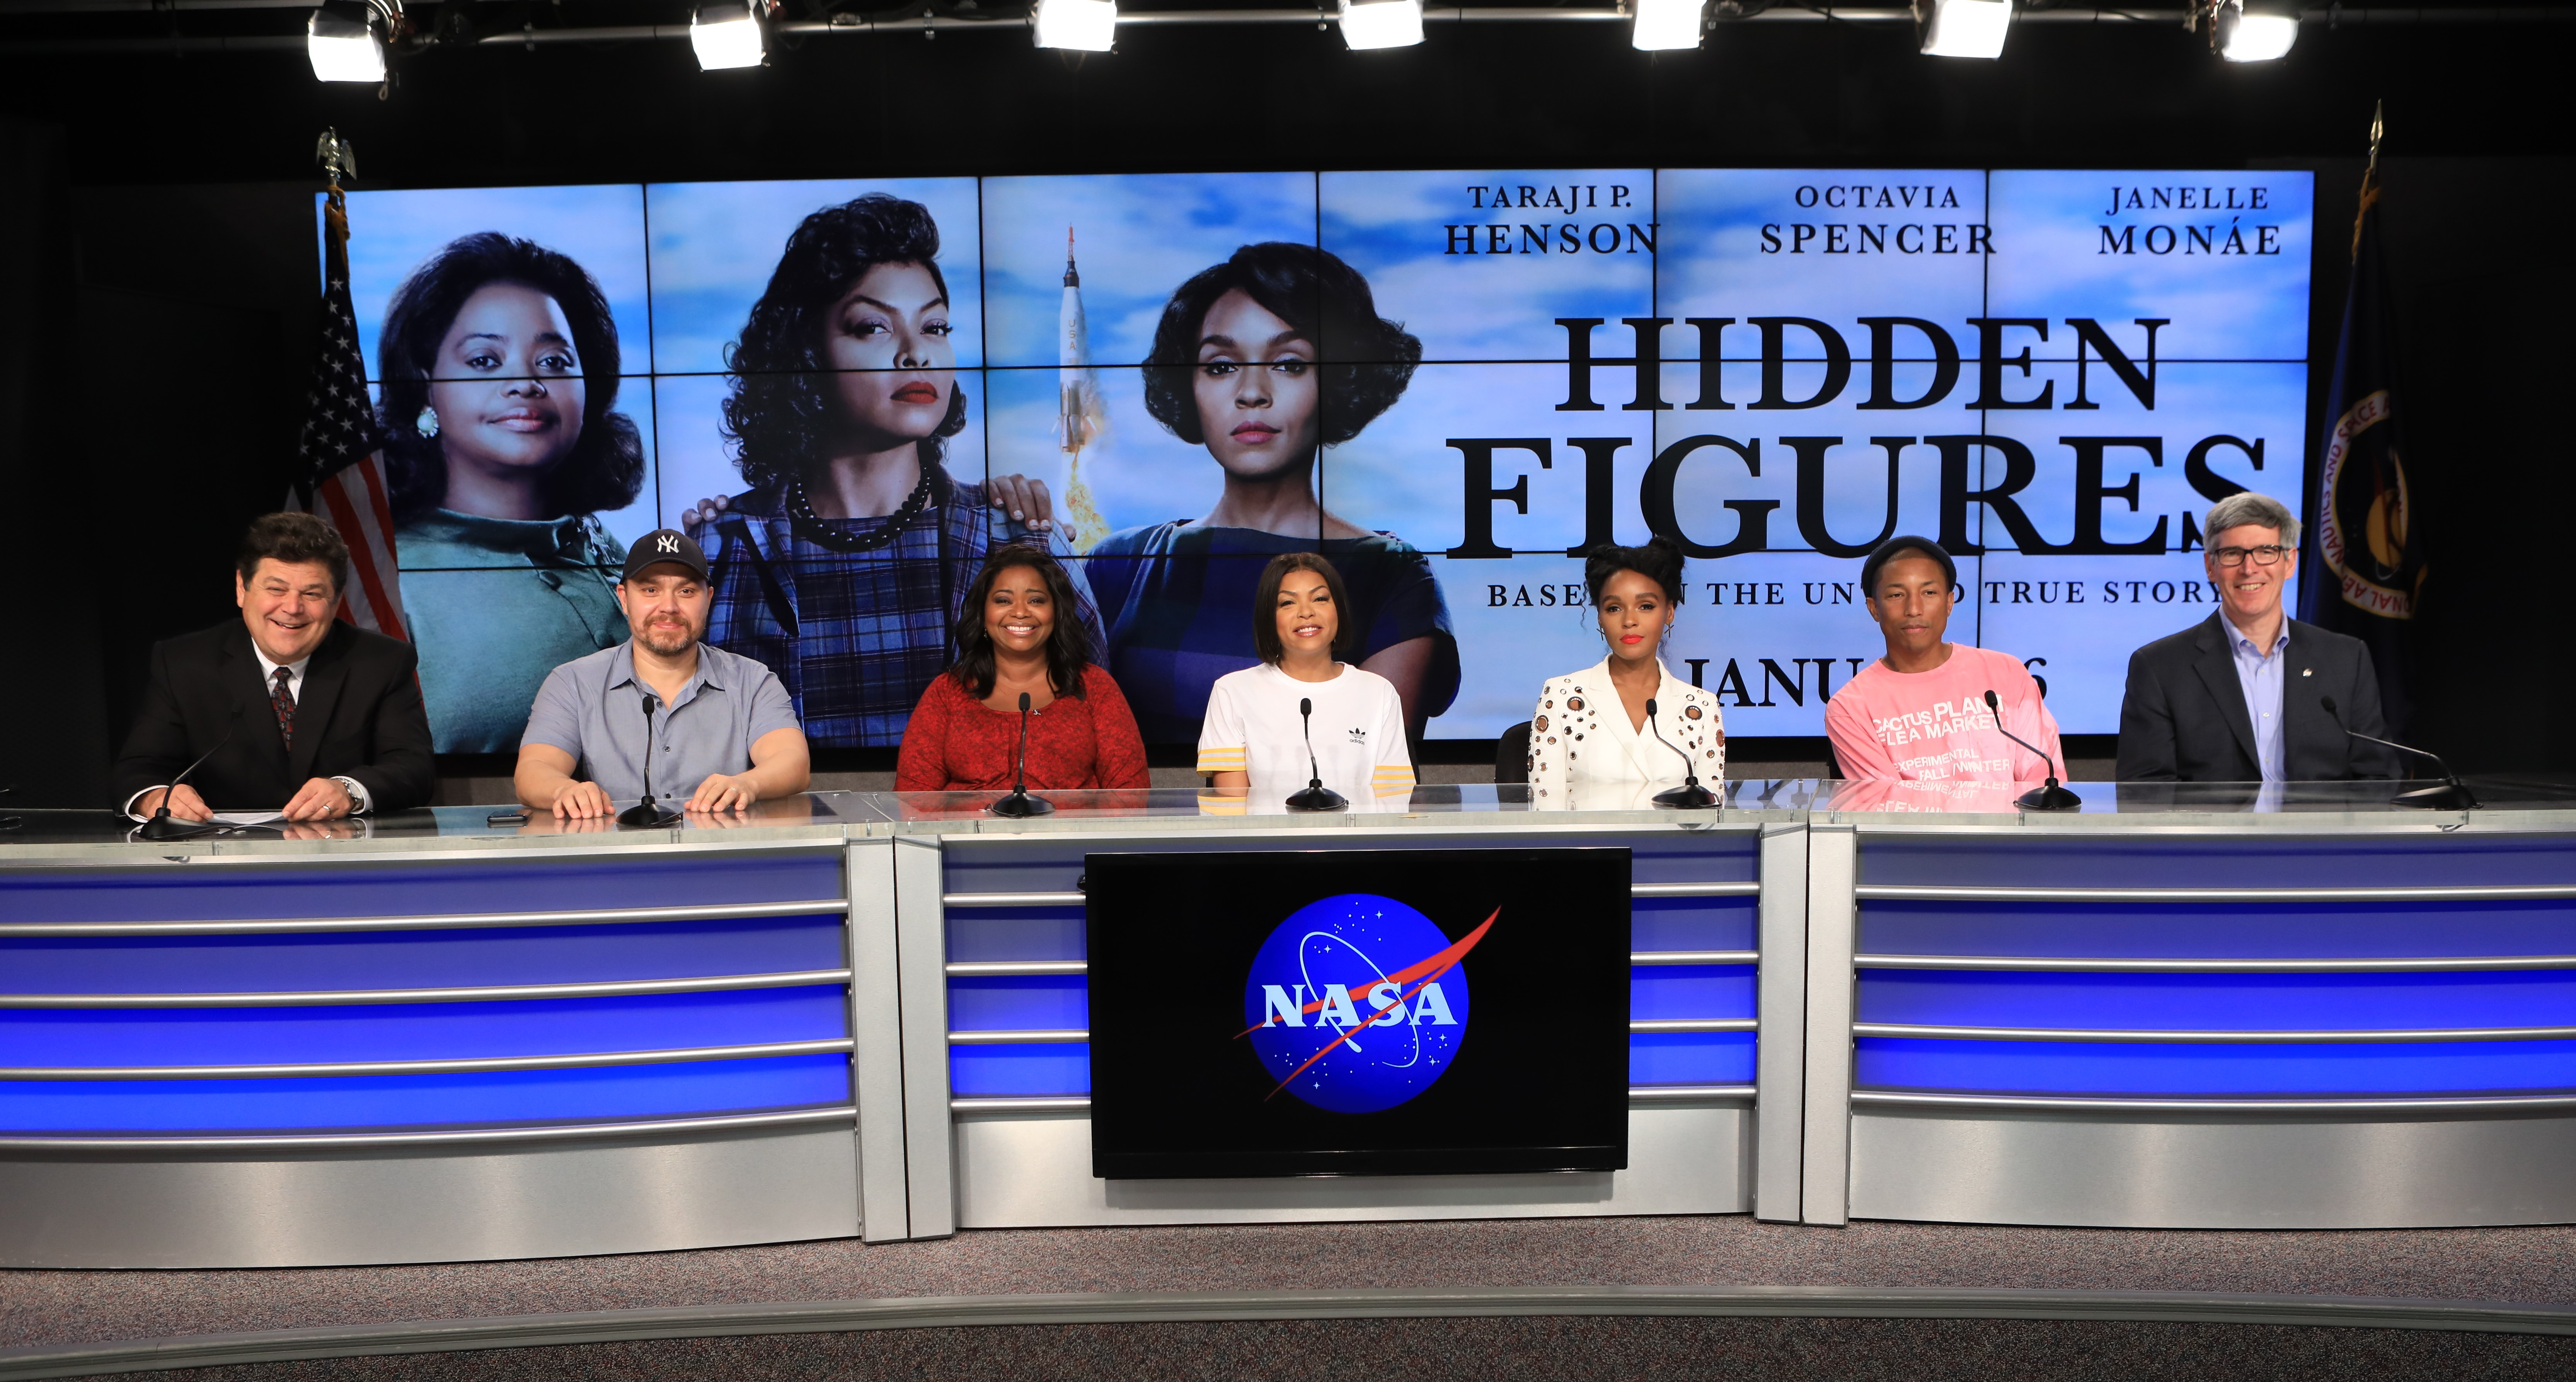 Vier Männer und drei Frauen sitzen an einem blau beluchteten Podium. Vorne ist ein Logo der NASA angebracht. Im Hintergrund ist ein Bildschirm zu sehen mit einem Filmplakat: Die drei Frauen im 50er Stil gekleidet und geschminkt und der Schriftzug Hidden Figures.